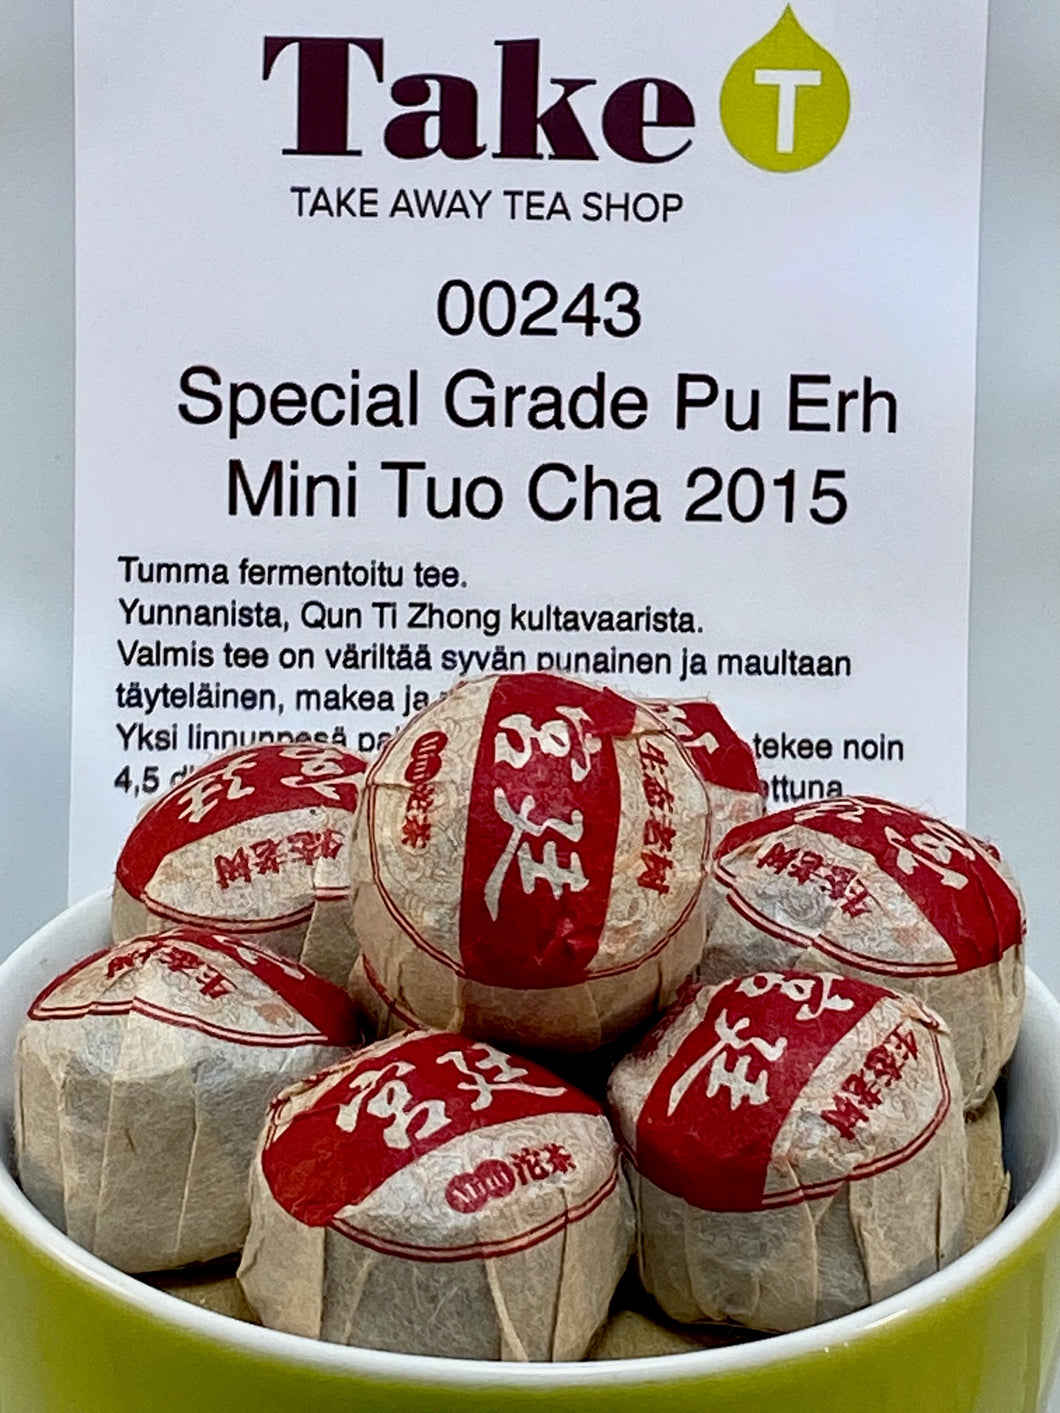 Special Grade Pu Erh Mini Tuo Cha 2015